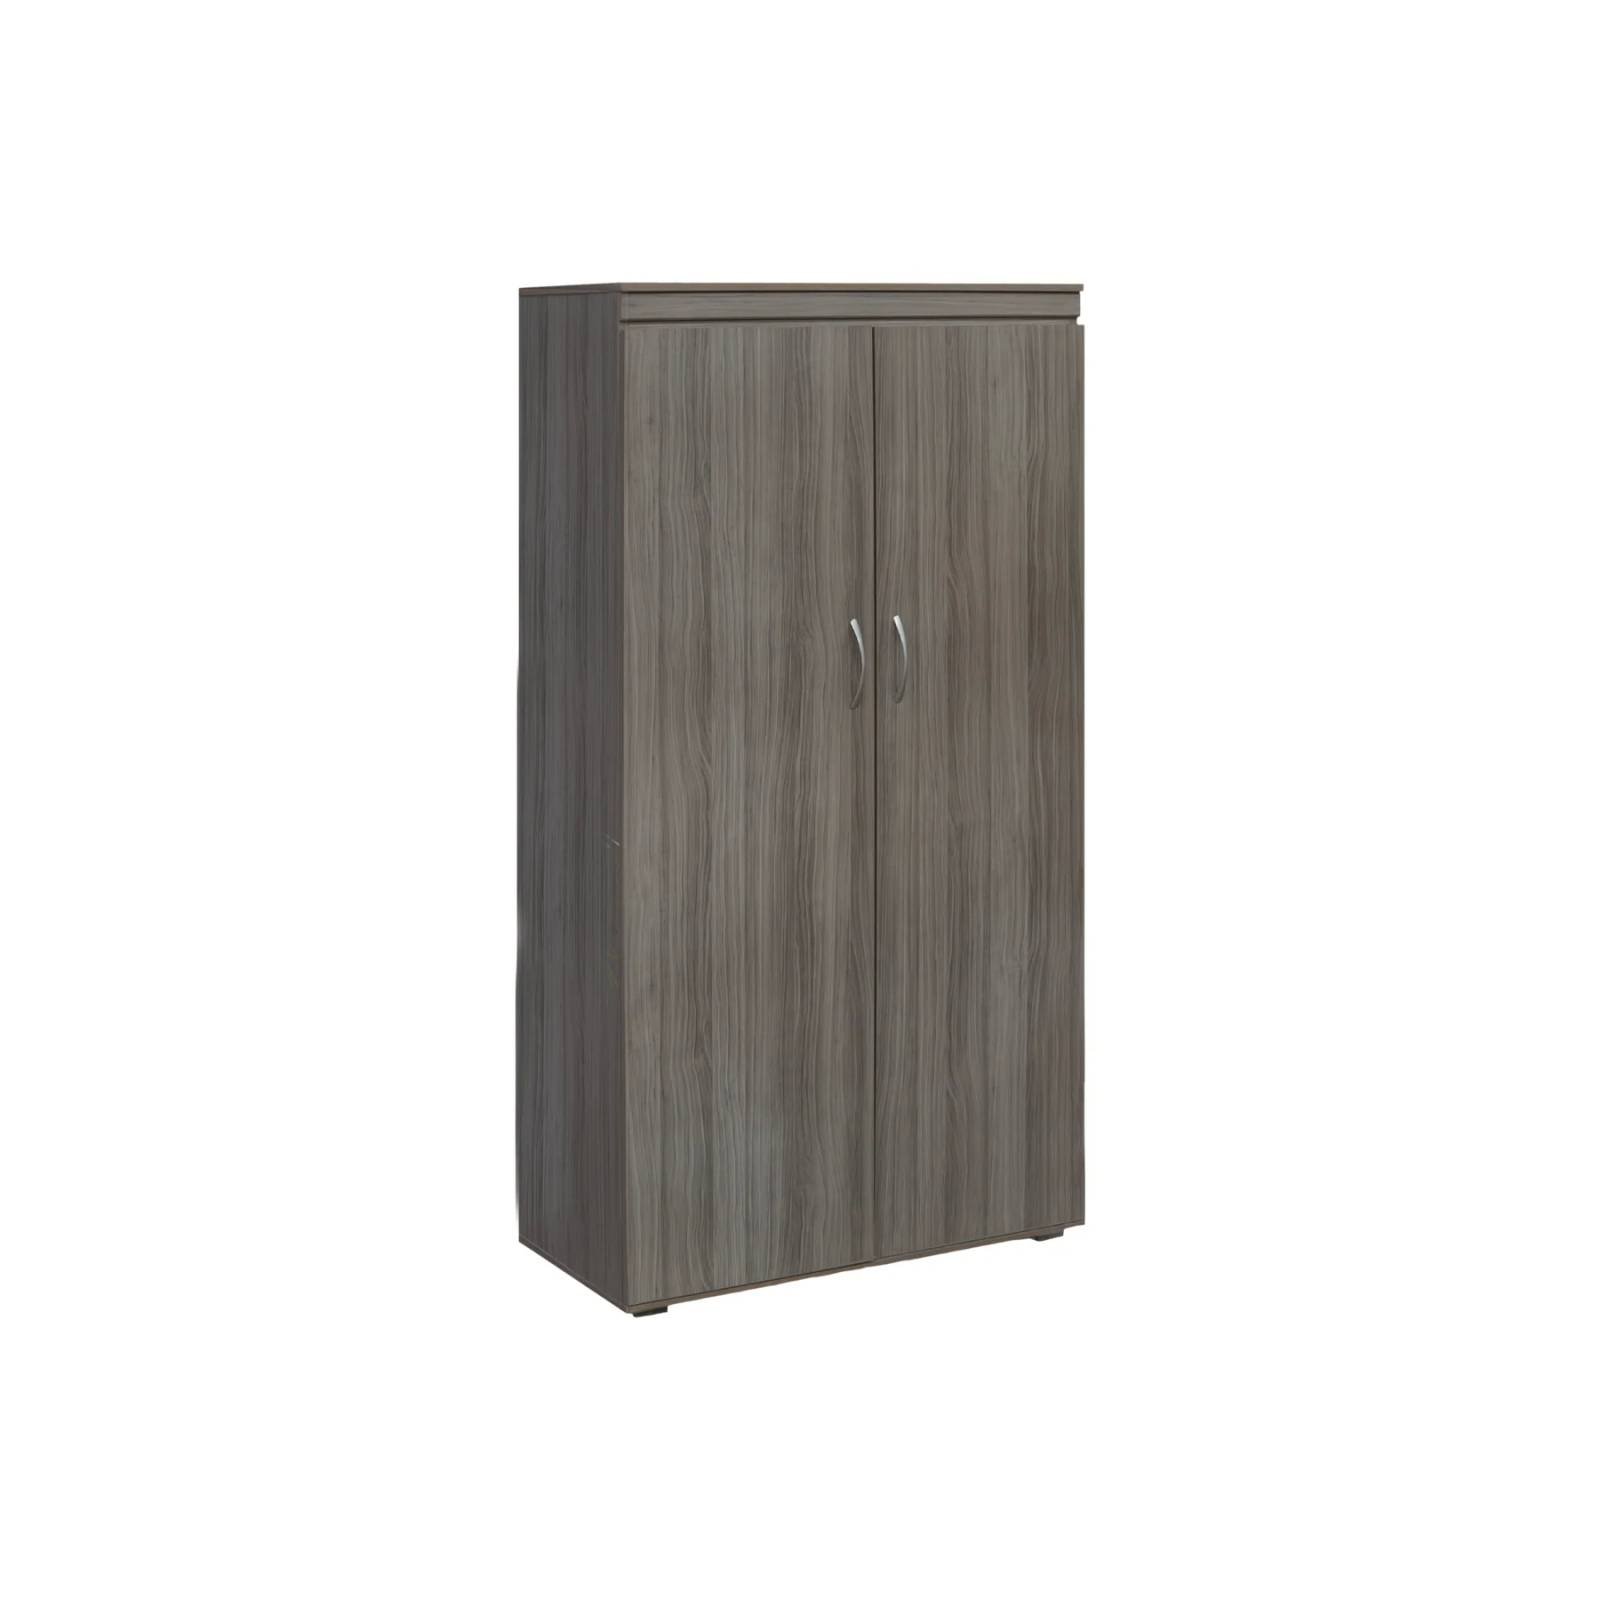 Armario modular de madera de pino en color gris - MIV Interiores